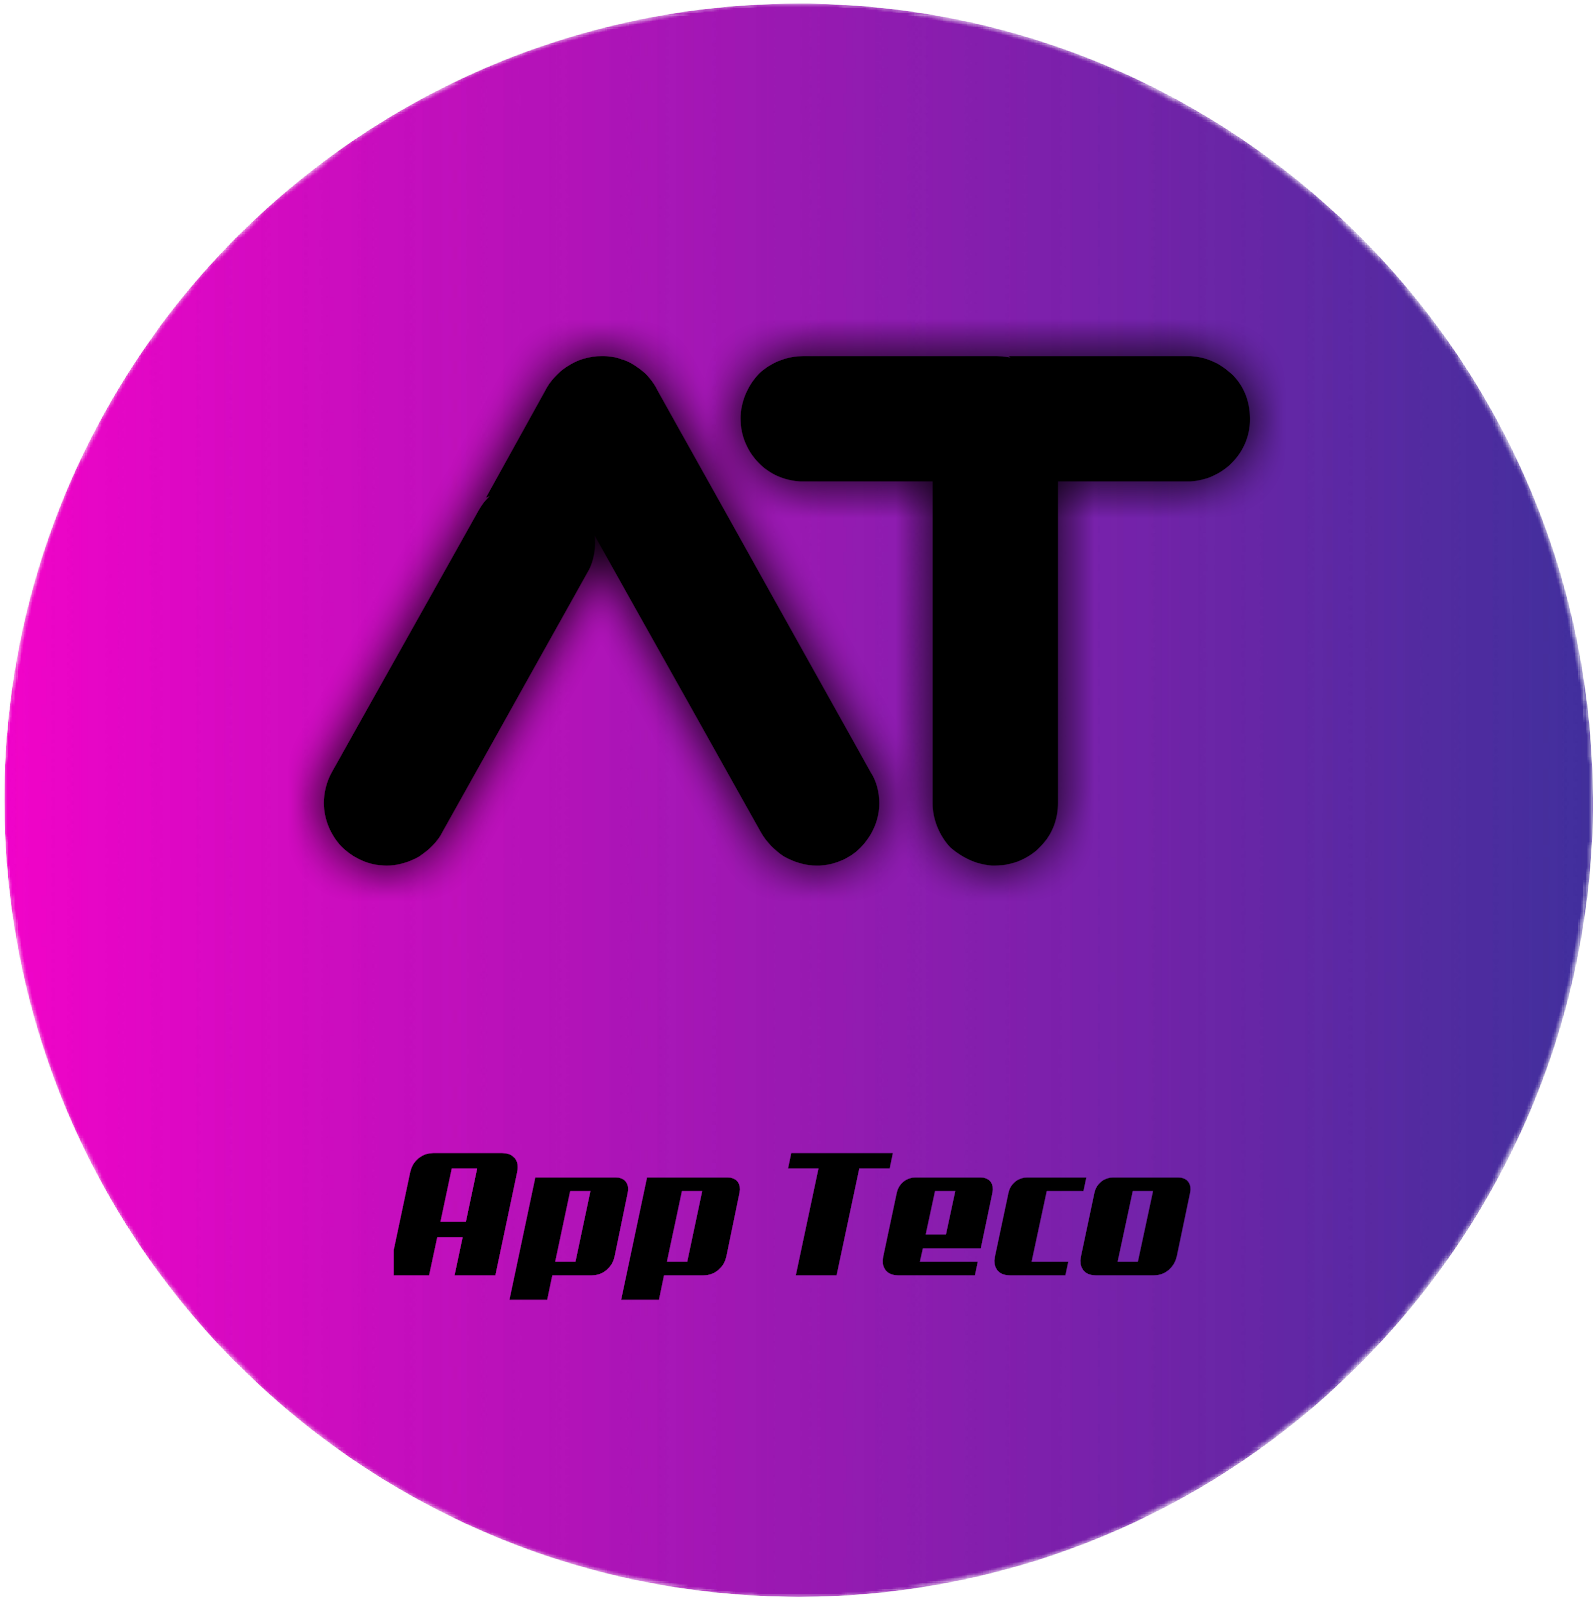 App Teco